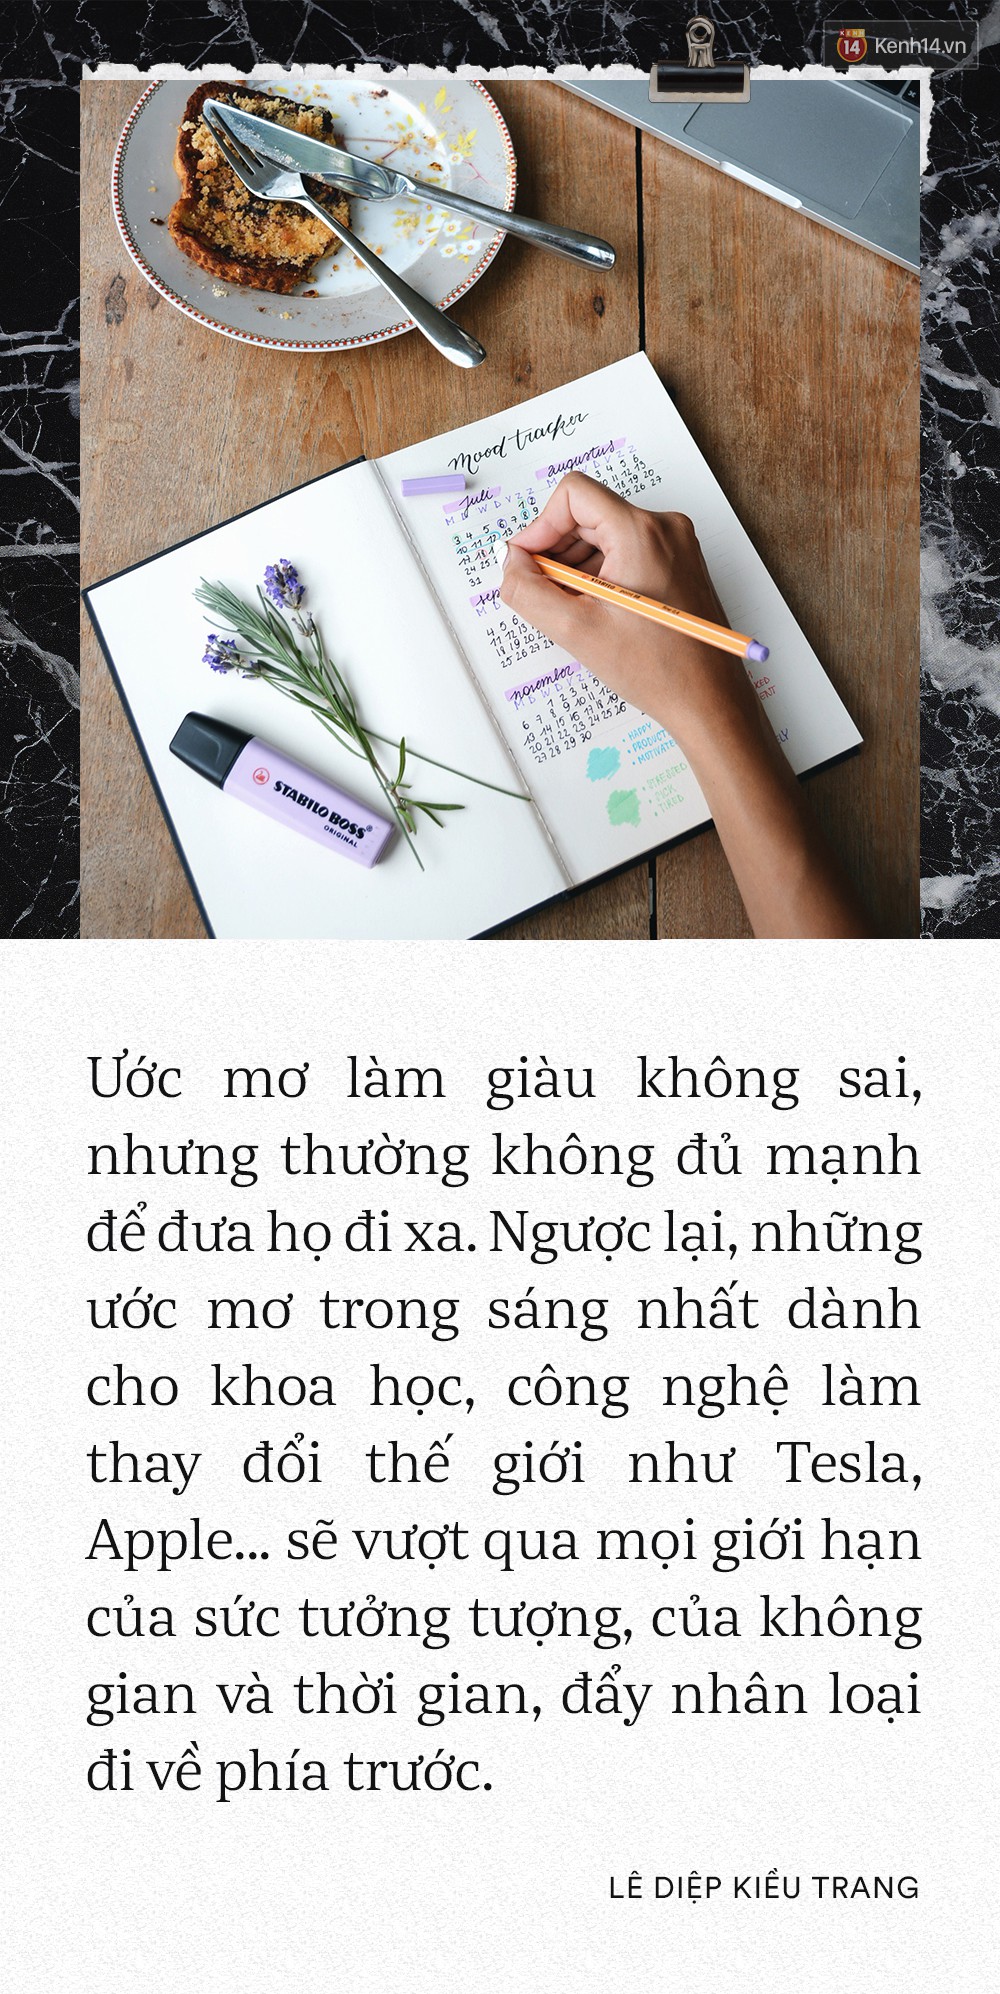 Giám đốc Facebook Việt Nam Lê Diệp Kiều Trang: Học giỏi không có nghĩa là làm việc giỏi - Ảnh 12.